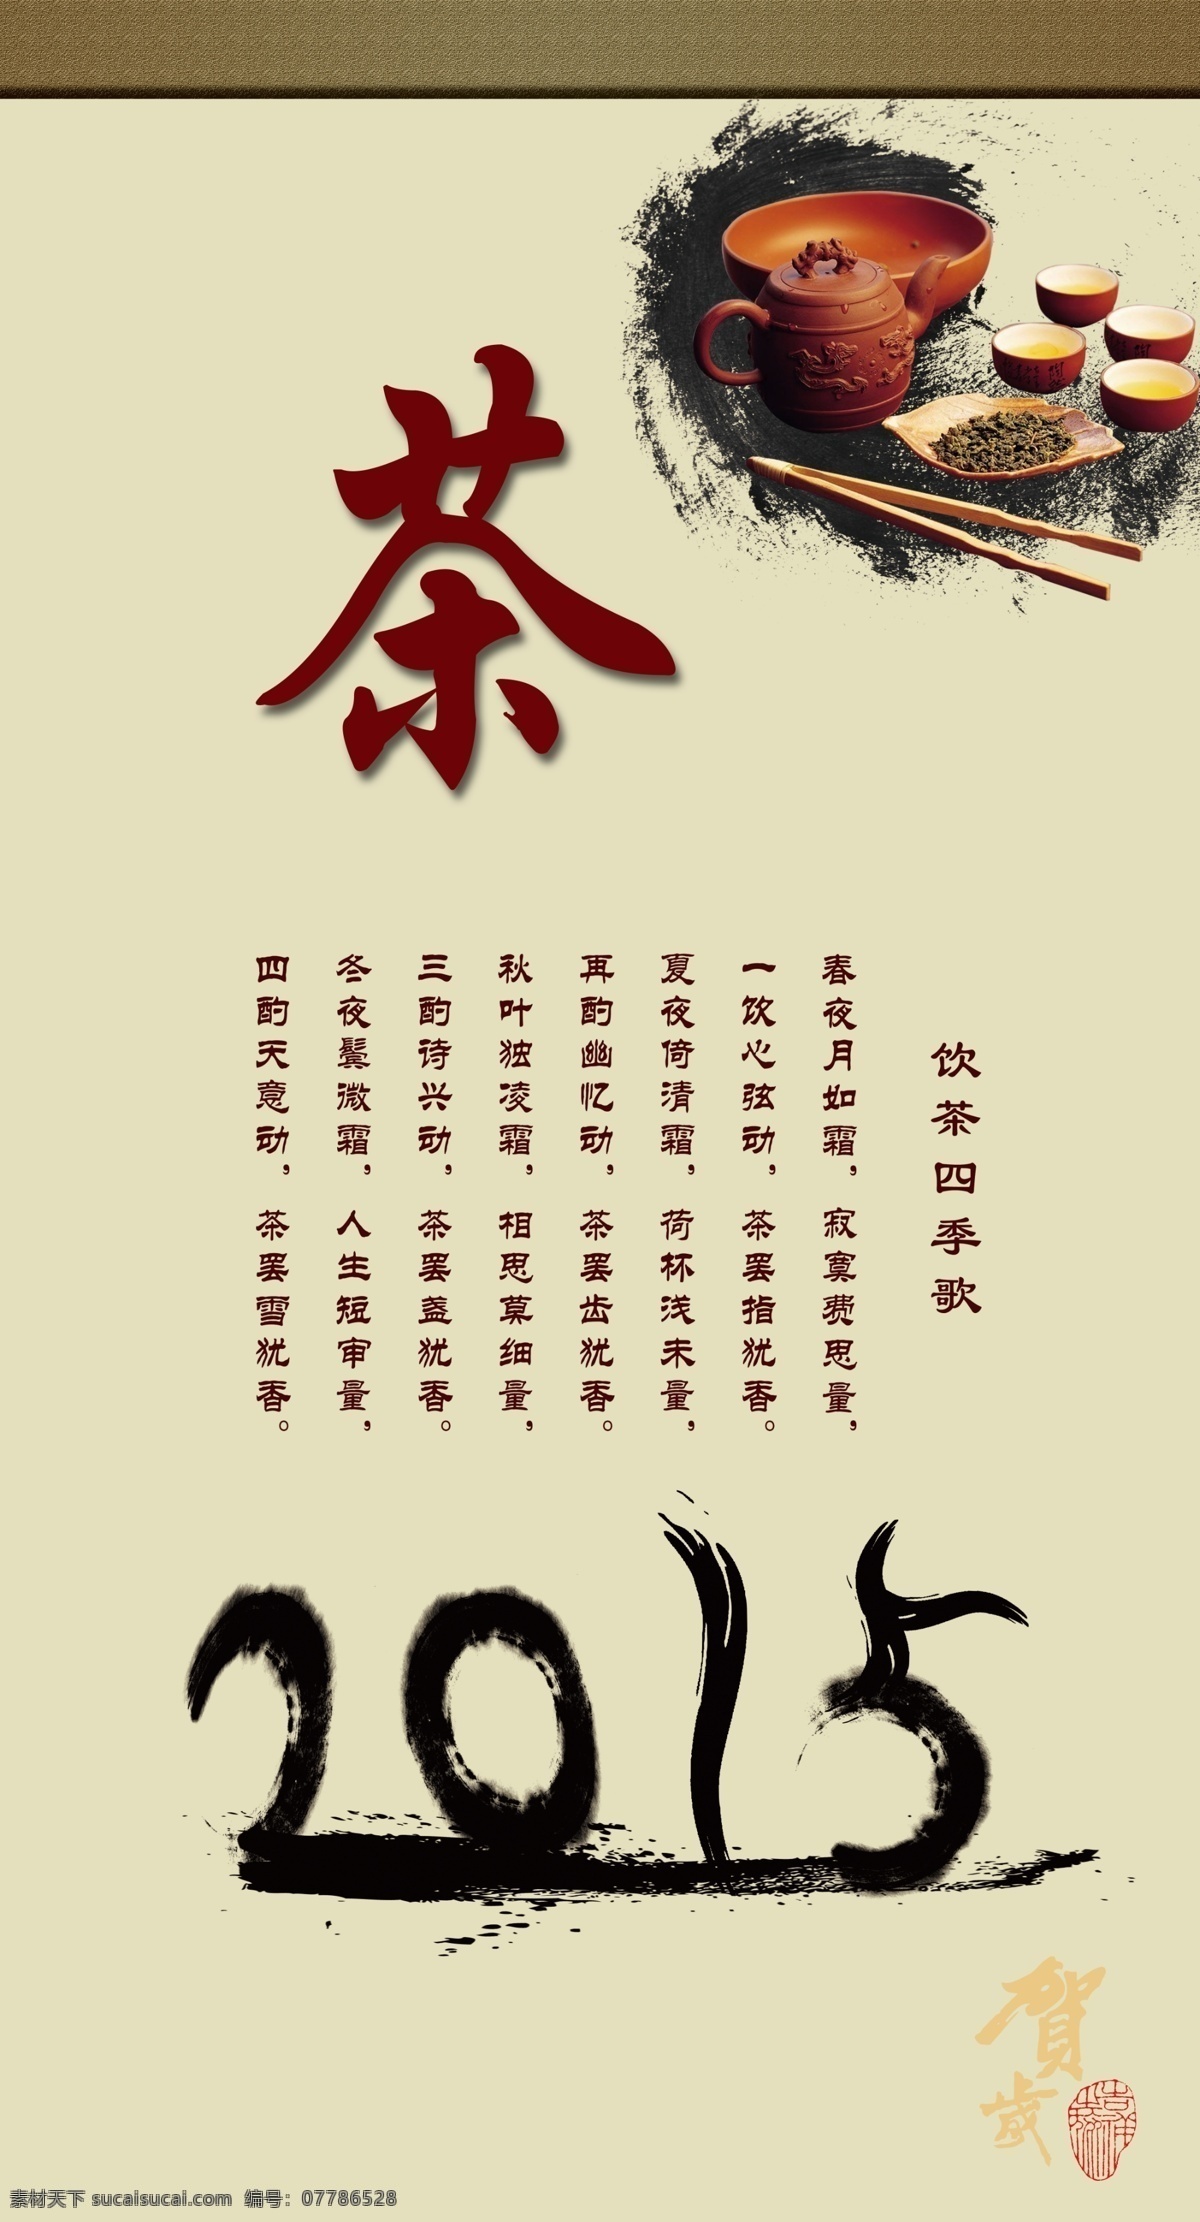 茶语免费下载 2015 茶 茶杯 茶语 节日庆祝 墨 文化艺术 节日素材 其他节日